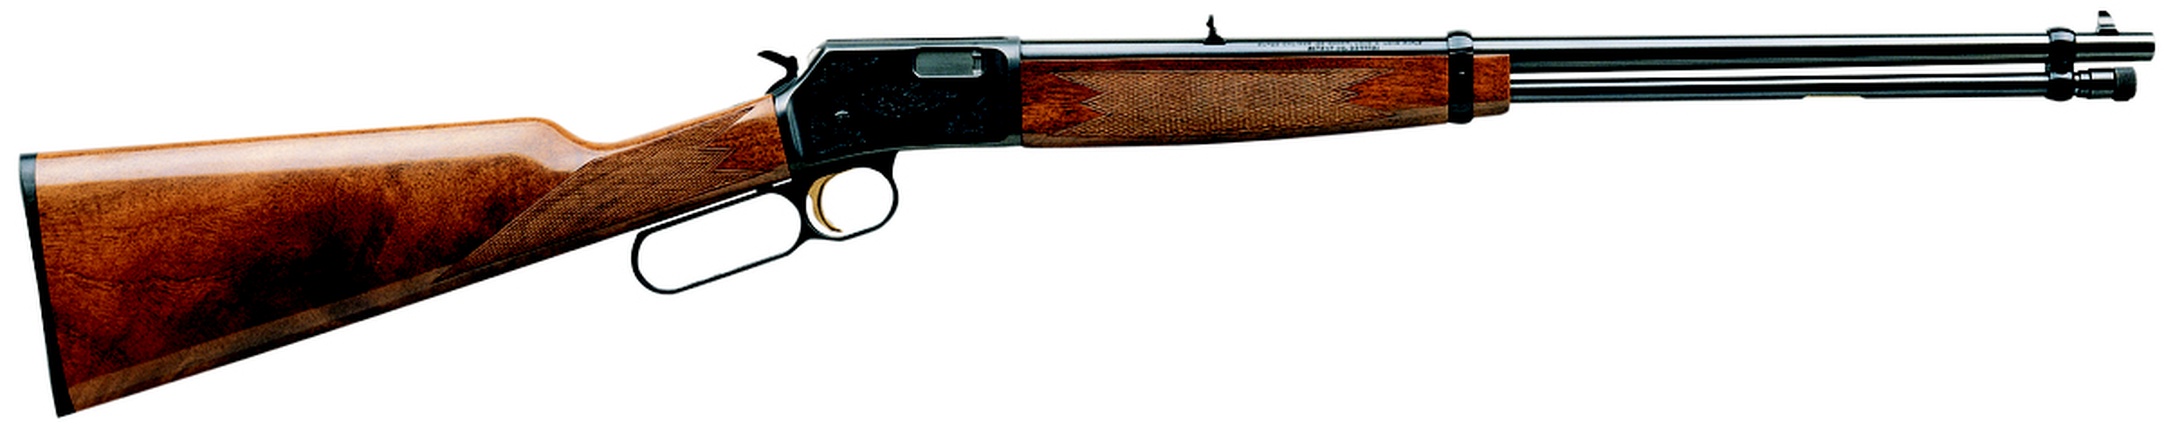 Don shot - Browning BL22 Grade 2